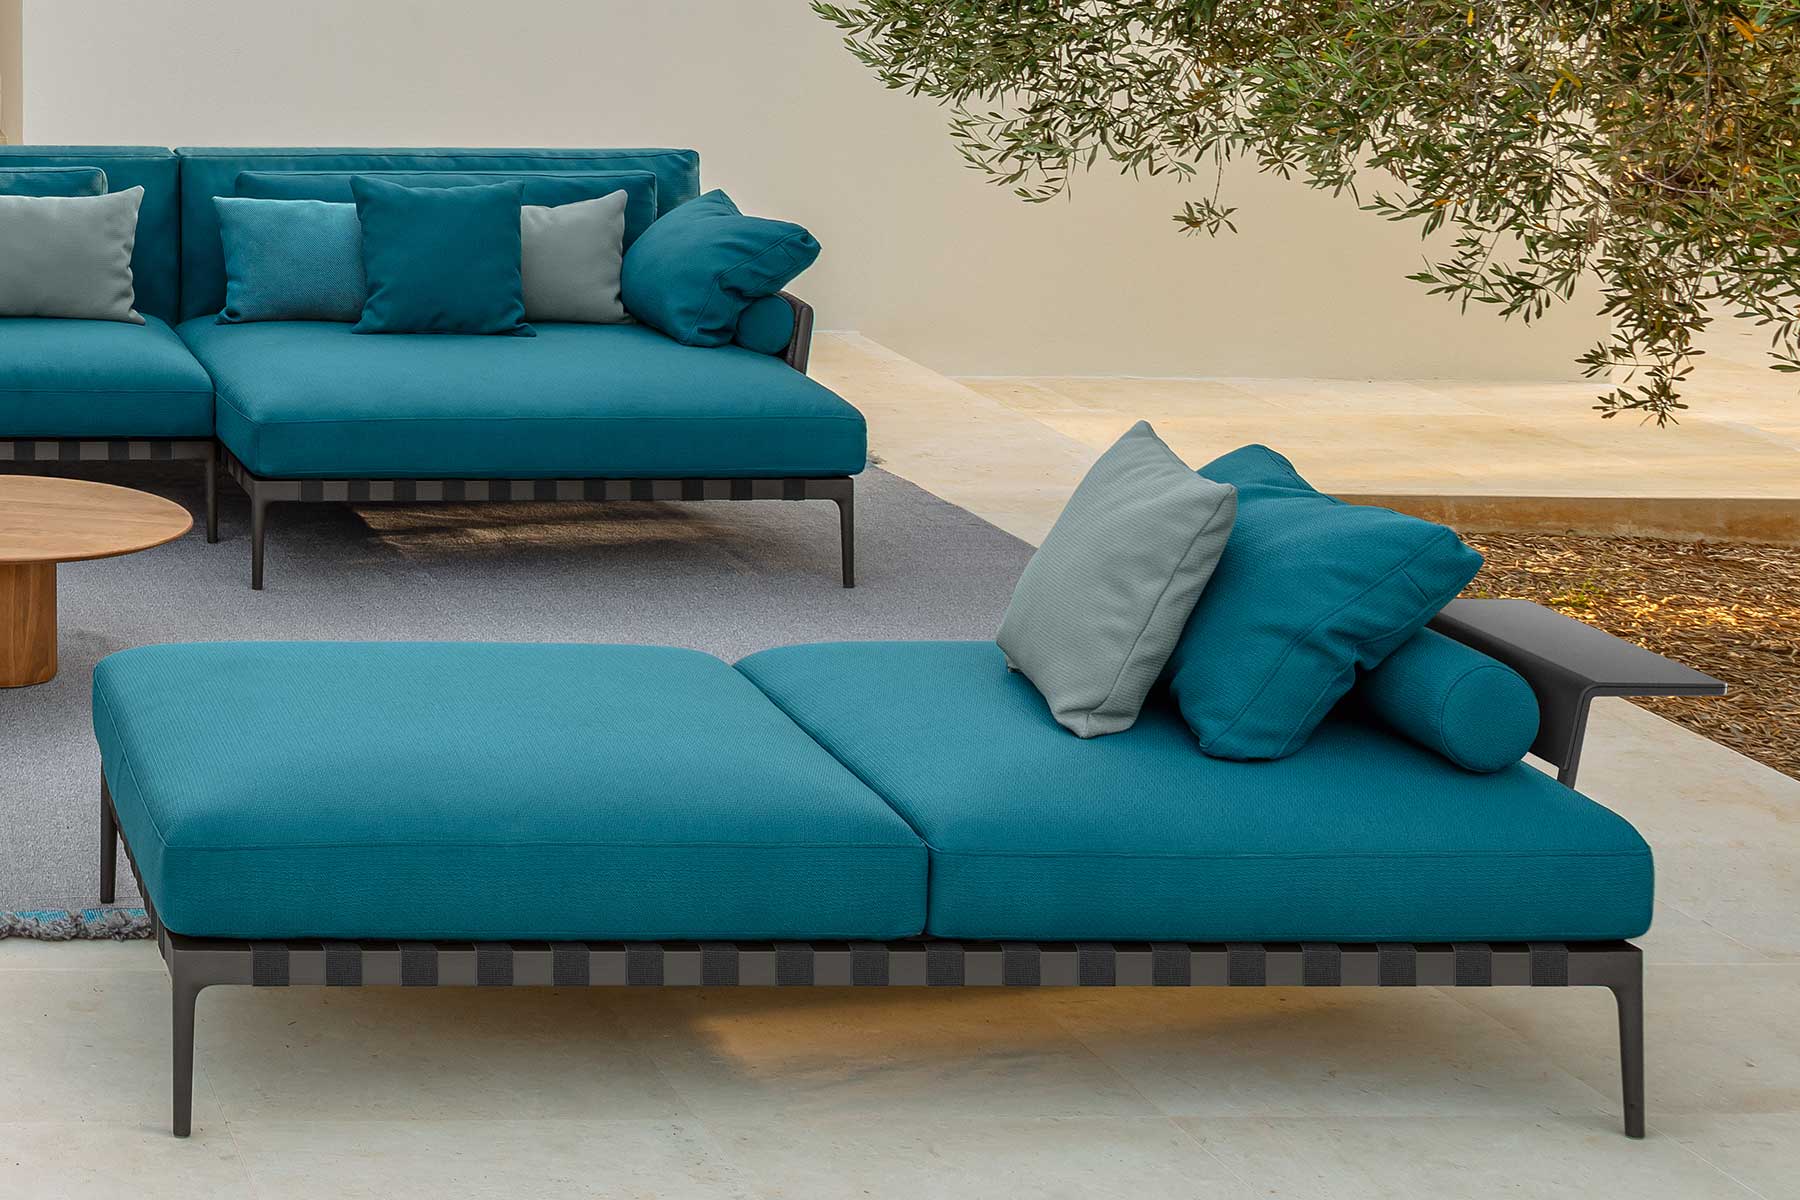 Vente en ligne de meubles d'extérieur de haute qualité. Salon de jardin bleu avec canapé et accessoires en option. Livraison à domicile gratuite.